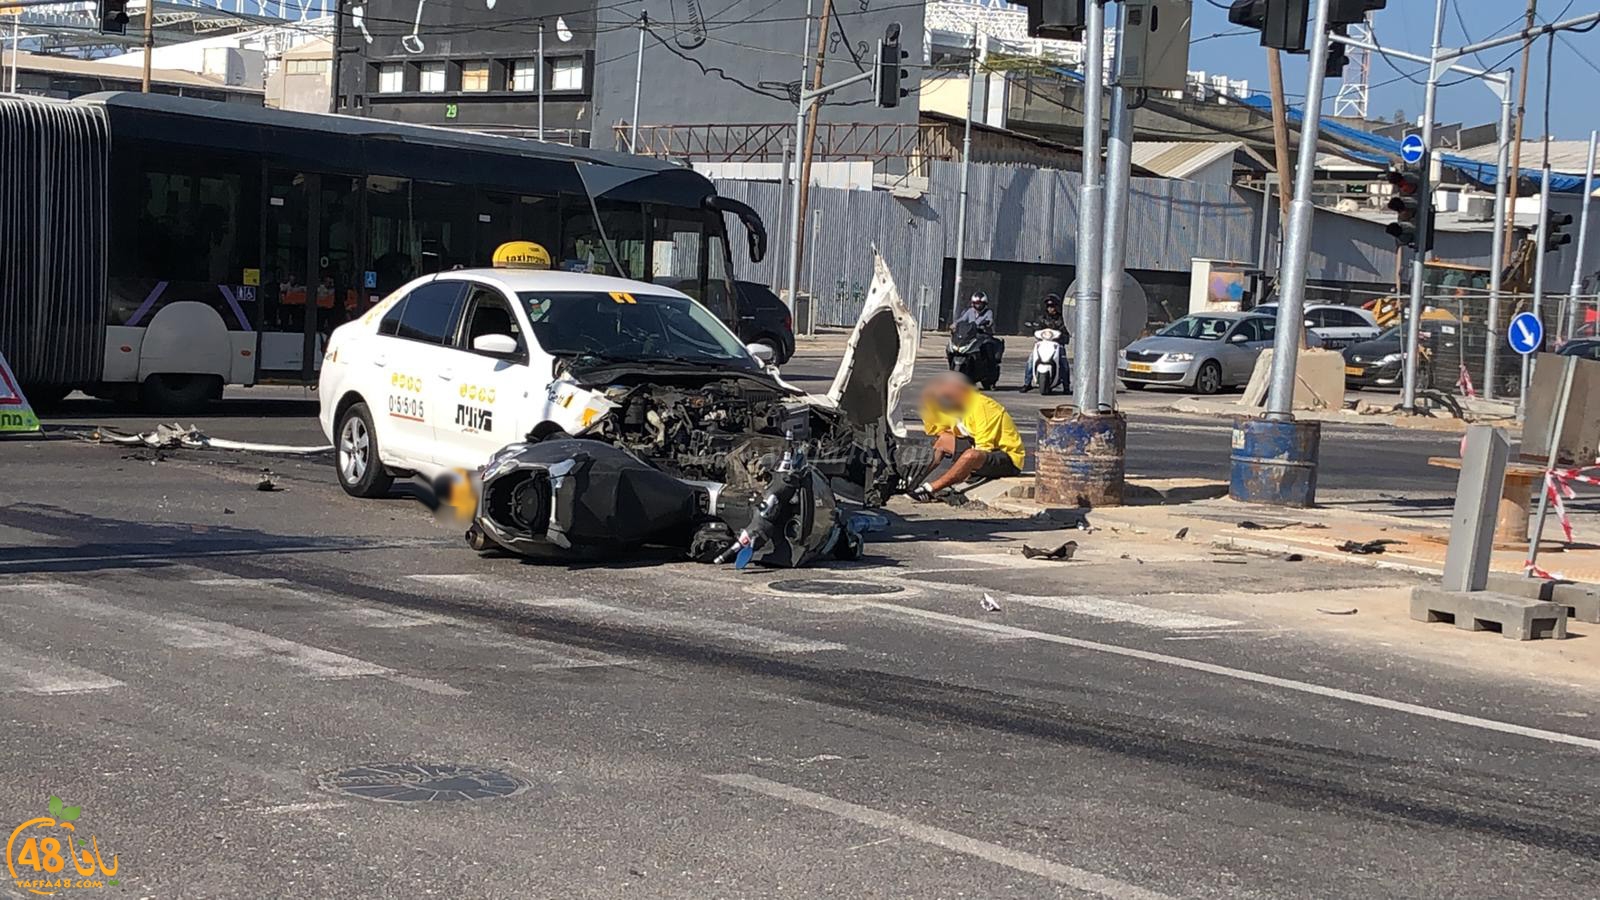  يافا: إصابة متوسطة لراكب دراجة نارية بحادث طرق 